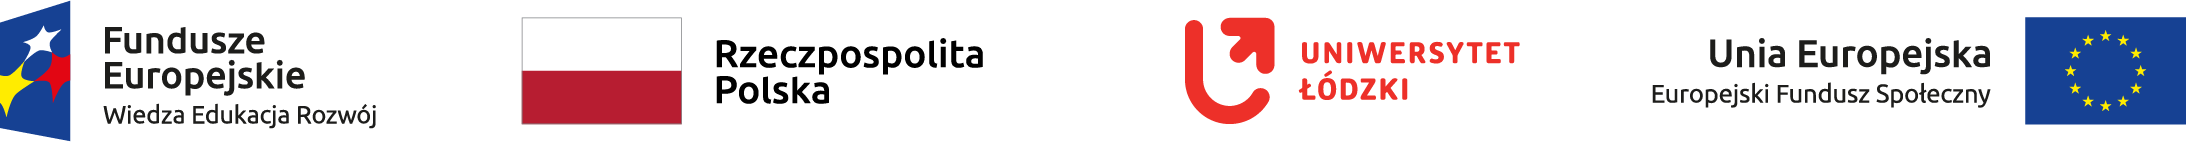 obraz przedstawia logo fundusze europejskie wiedza edukacja rozwój, logo Rzeczepospolita Polska, logo Uniwersytet Łódzki oraz logo Unia Europejska Europejski Fundusz Społeczny